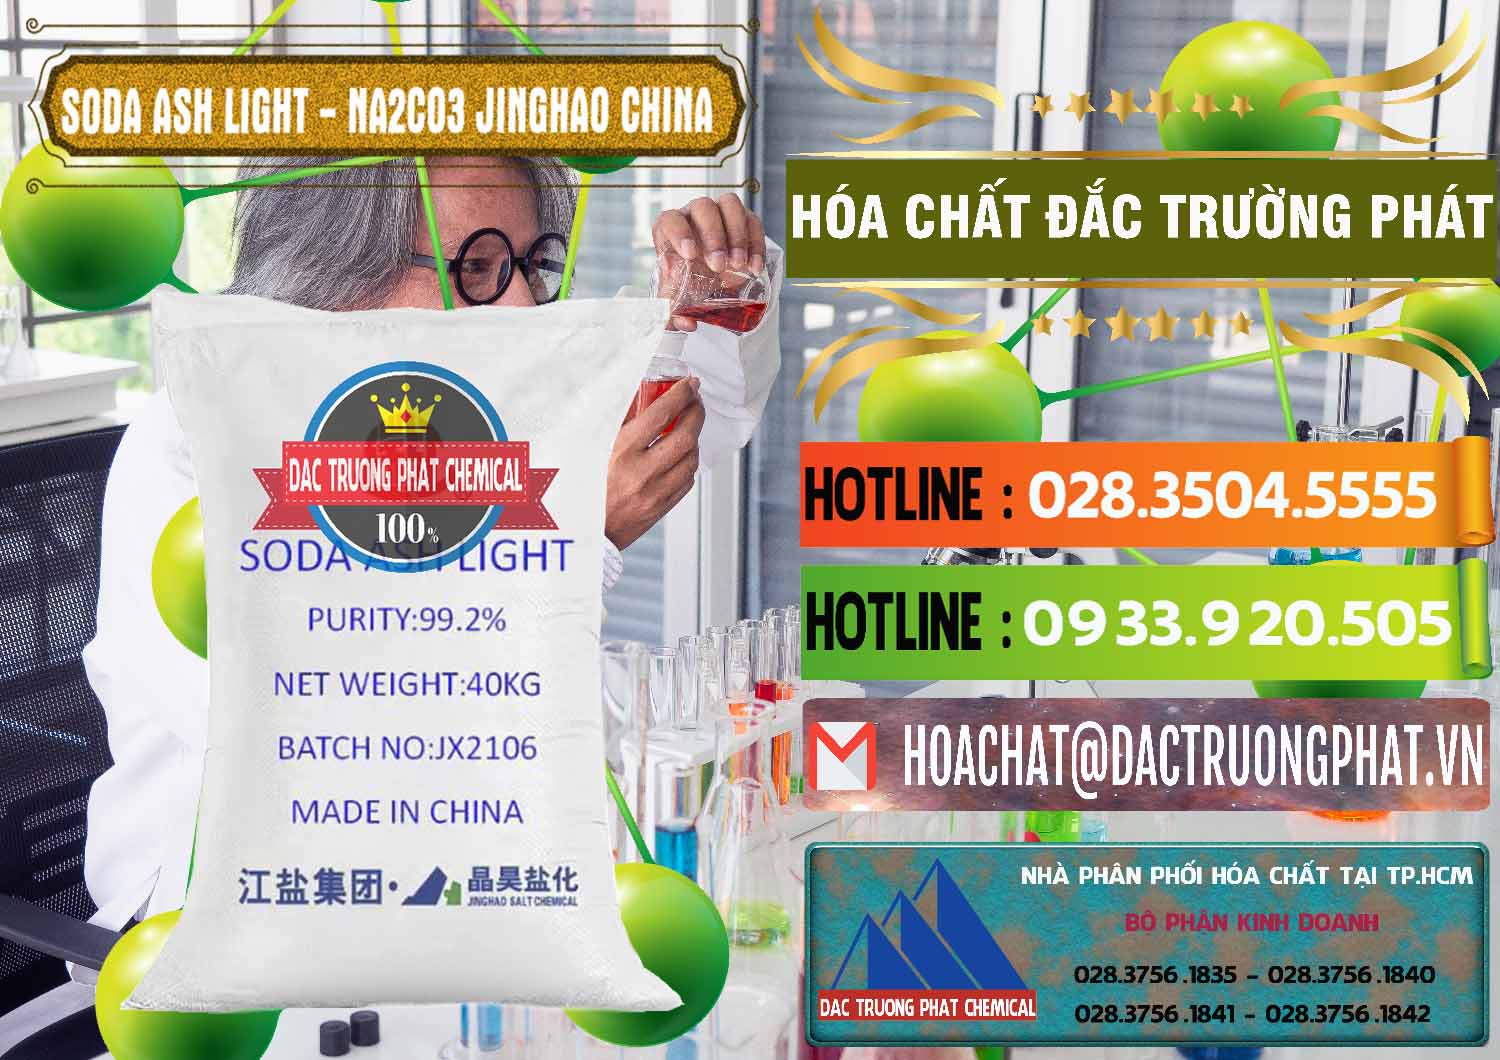 Công ty phân phối và bán Soda Ash Light - NA2CO3 Jinghao Trung Quốc China - 0339 - Cty cung cấp - nhập khẩu hóa chất tại TP.HCM - cungcaphoachat.com.vn